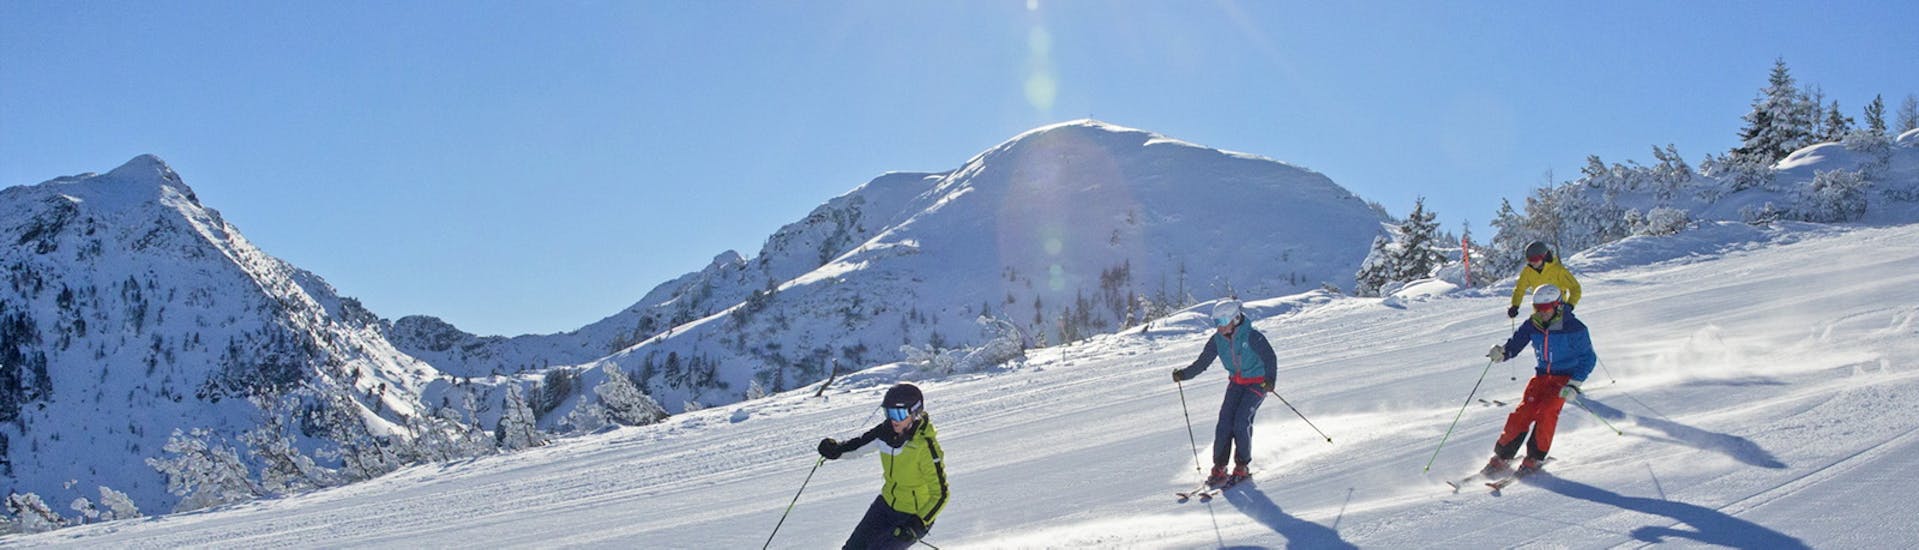 Skilessen voor volwassenen vanaf 15 jaar voor alle niveaus.